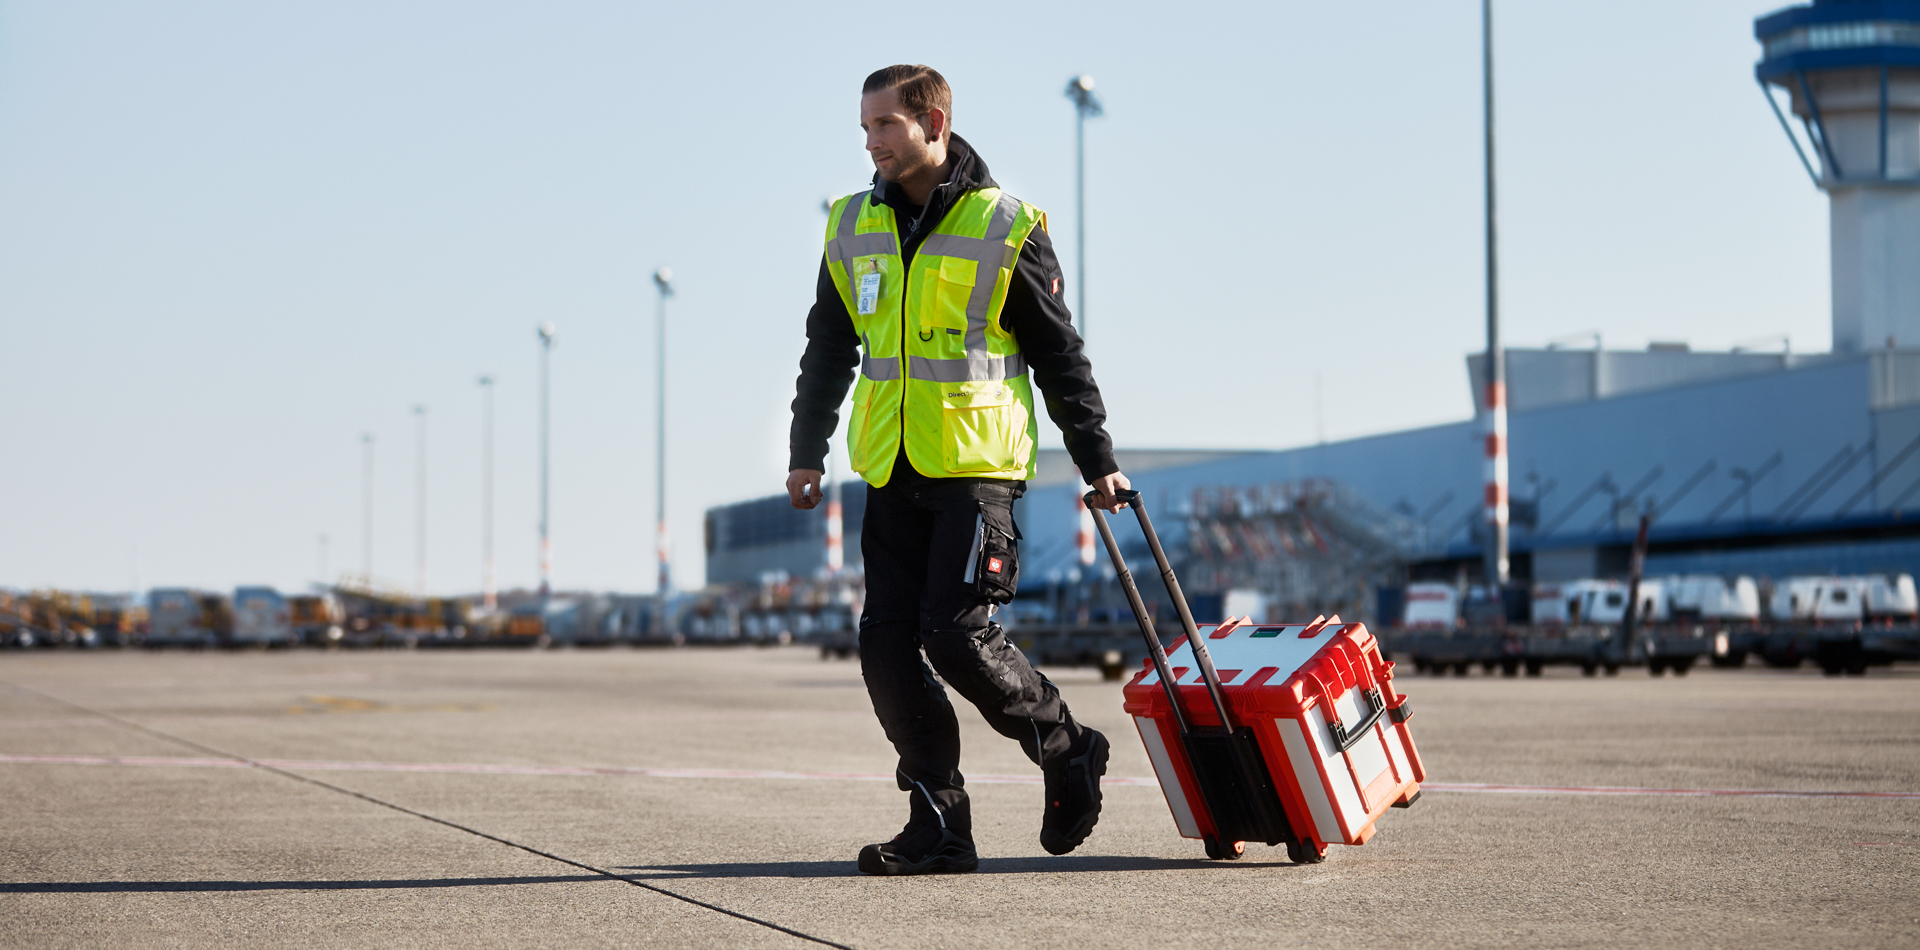 Mobiele STAHLWILLE-gereedschapskoffer die over een vliegveld wordt vervoerd